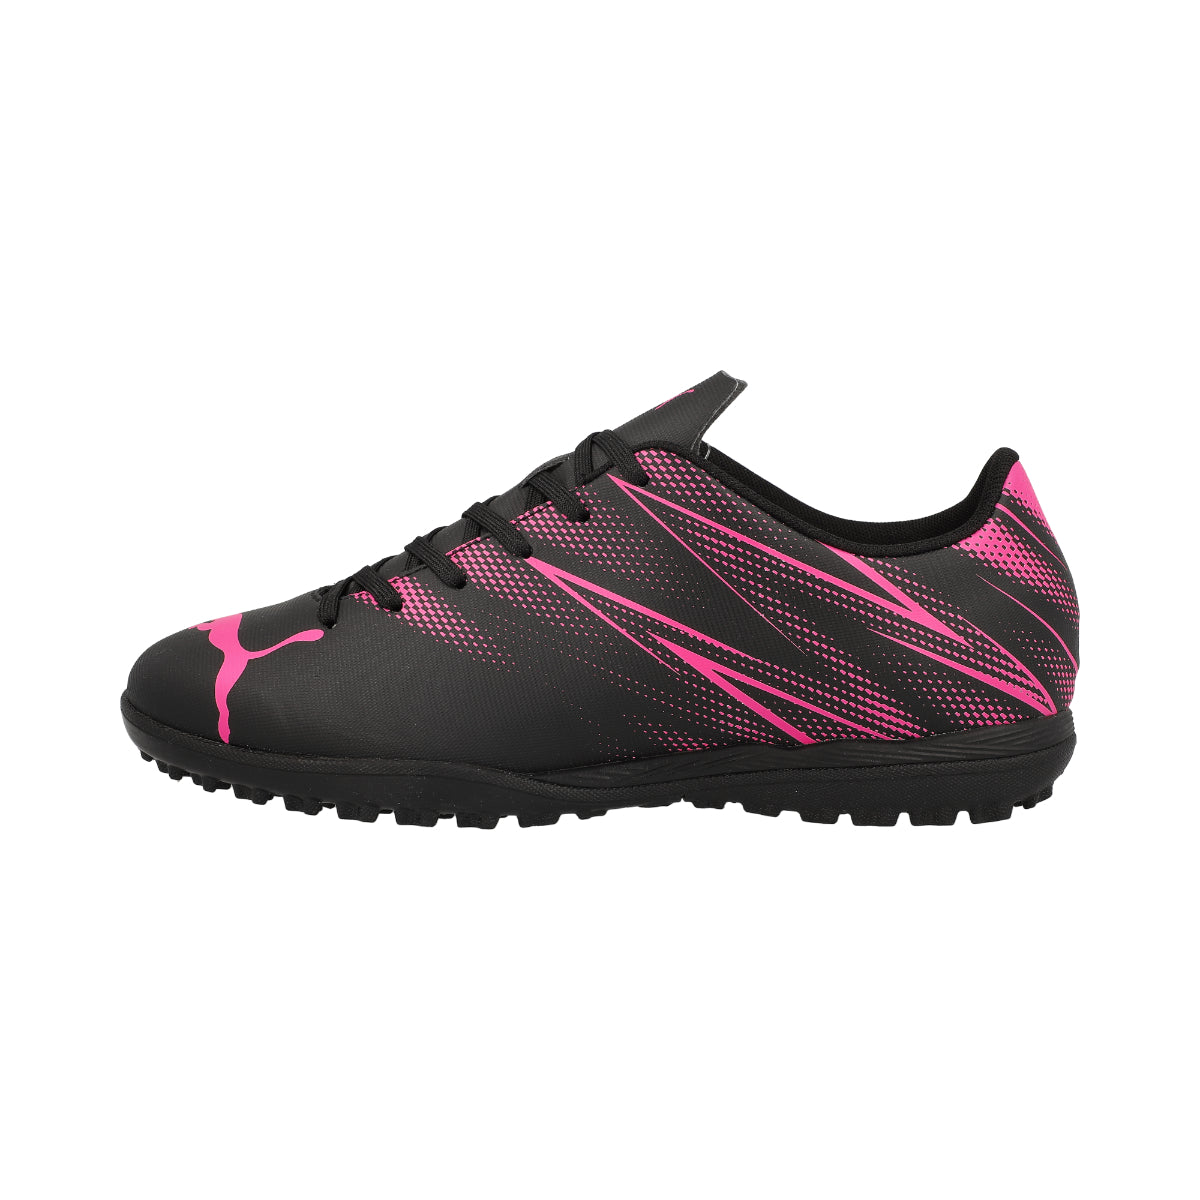 Puma Attacanto Junior TT Football Boots - 1 - Black/Pink